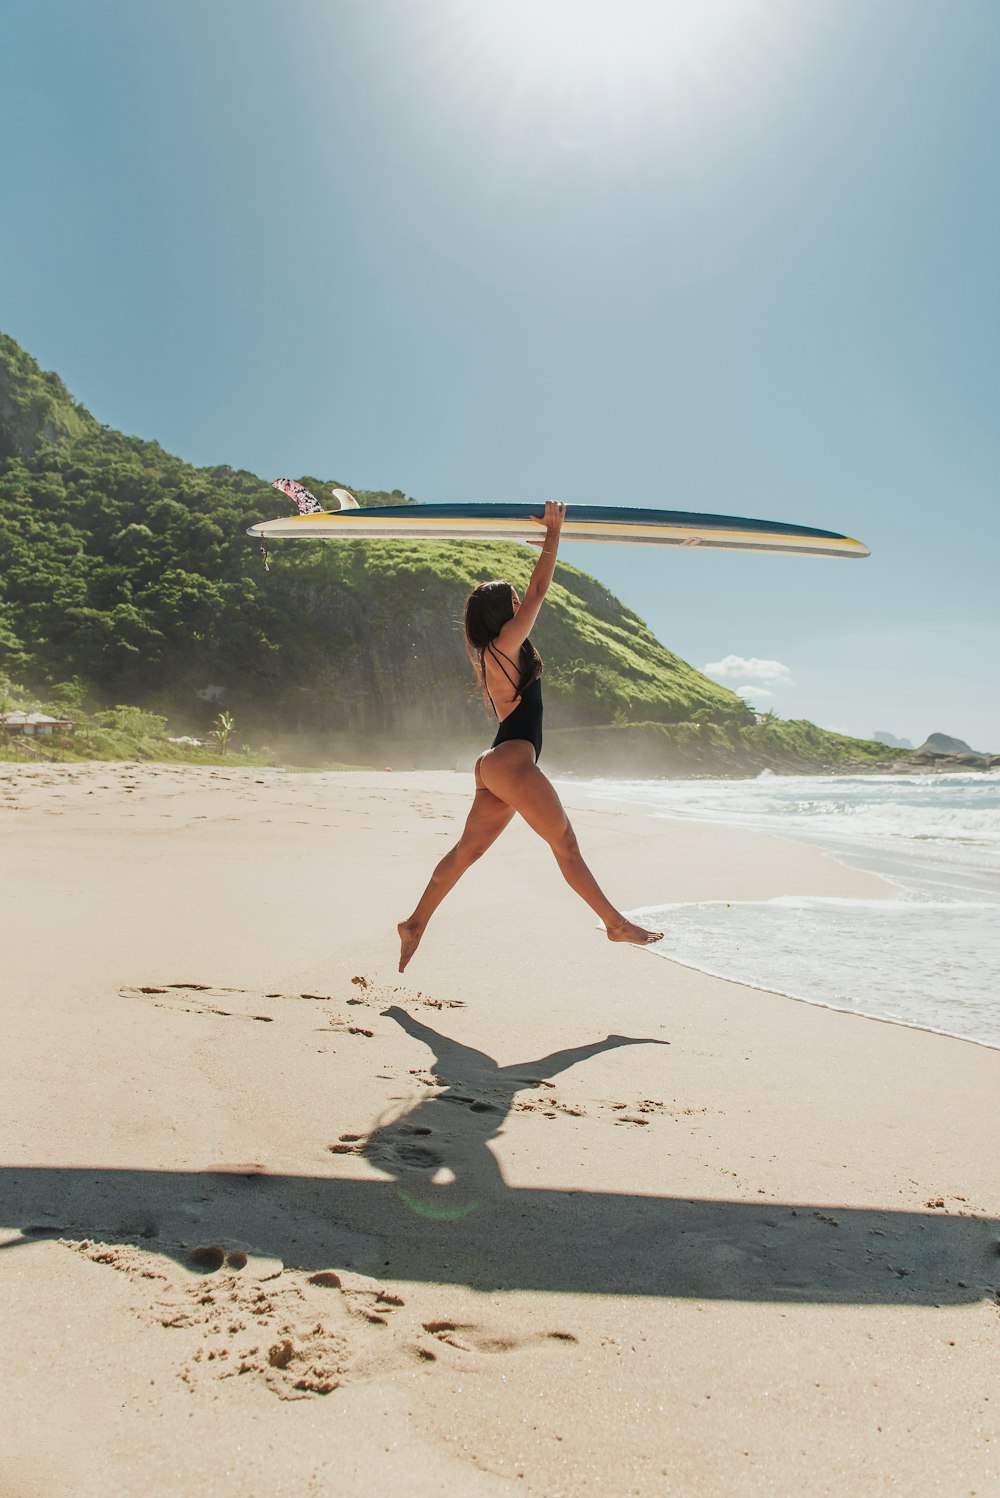 mulher no biquíni preto que segura a prancha de surf branca na praia durante o dia